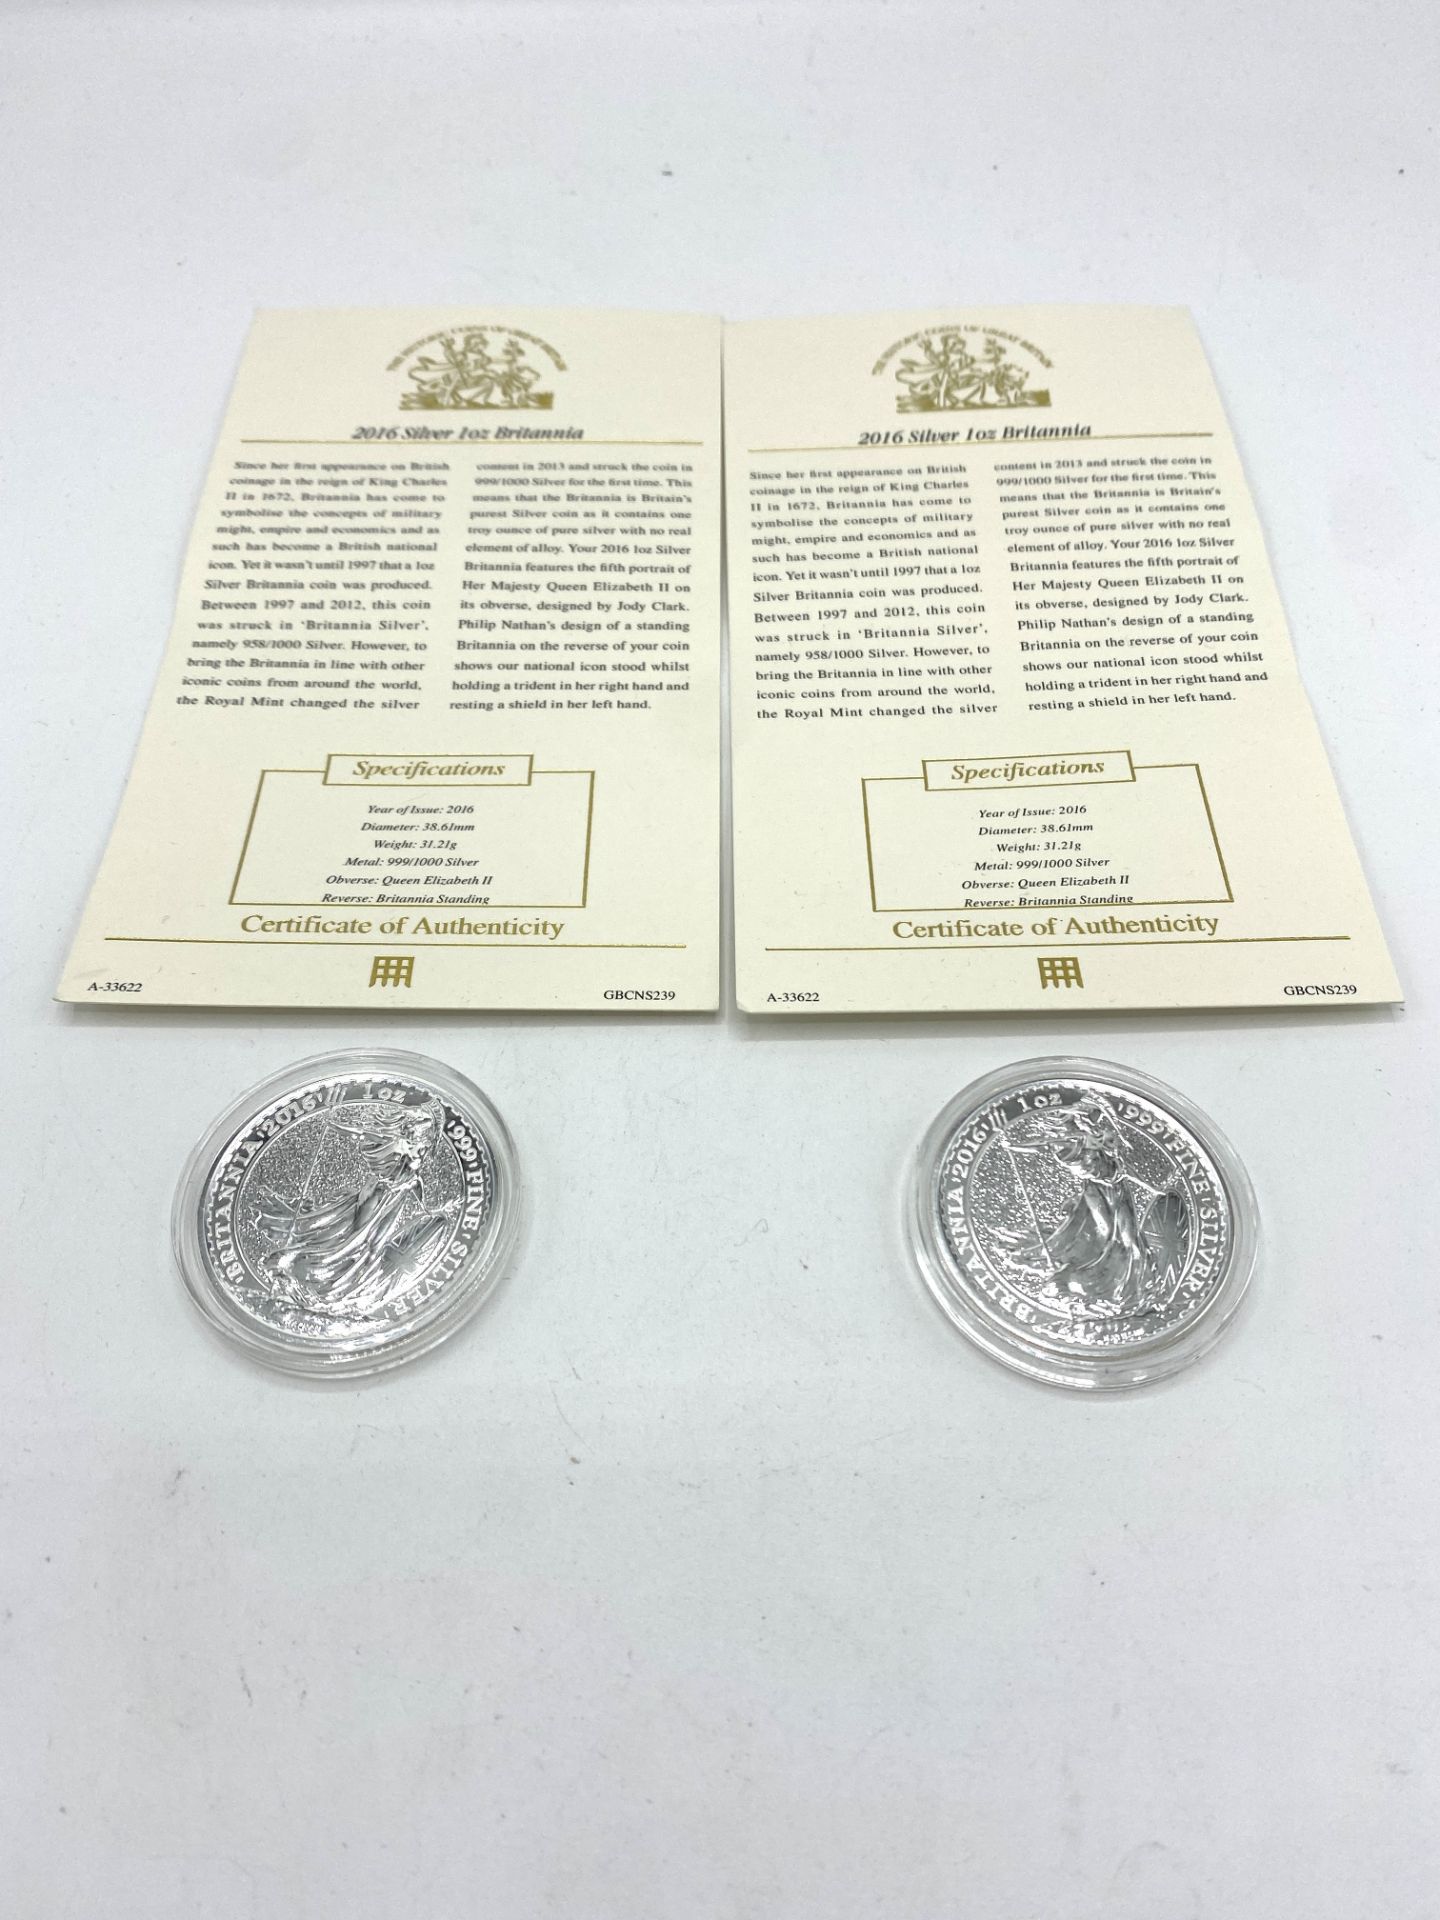 2 silver one ounce Britannia coins